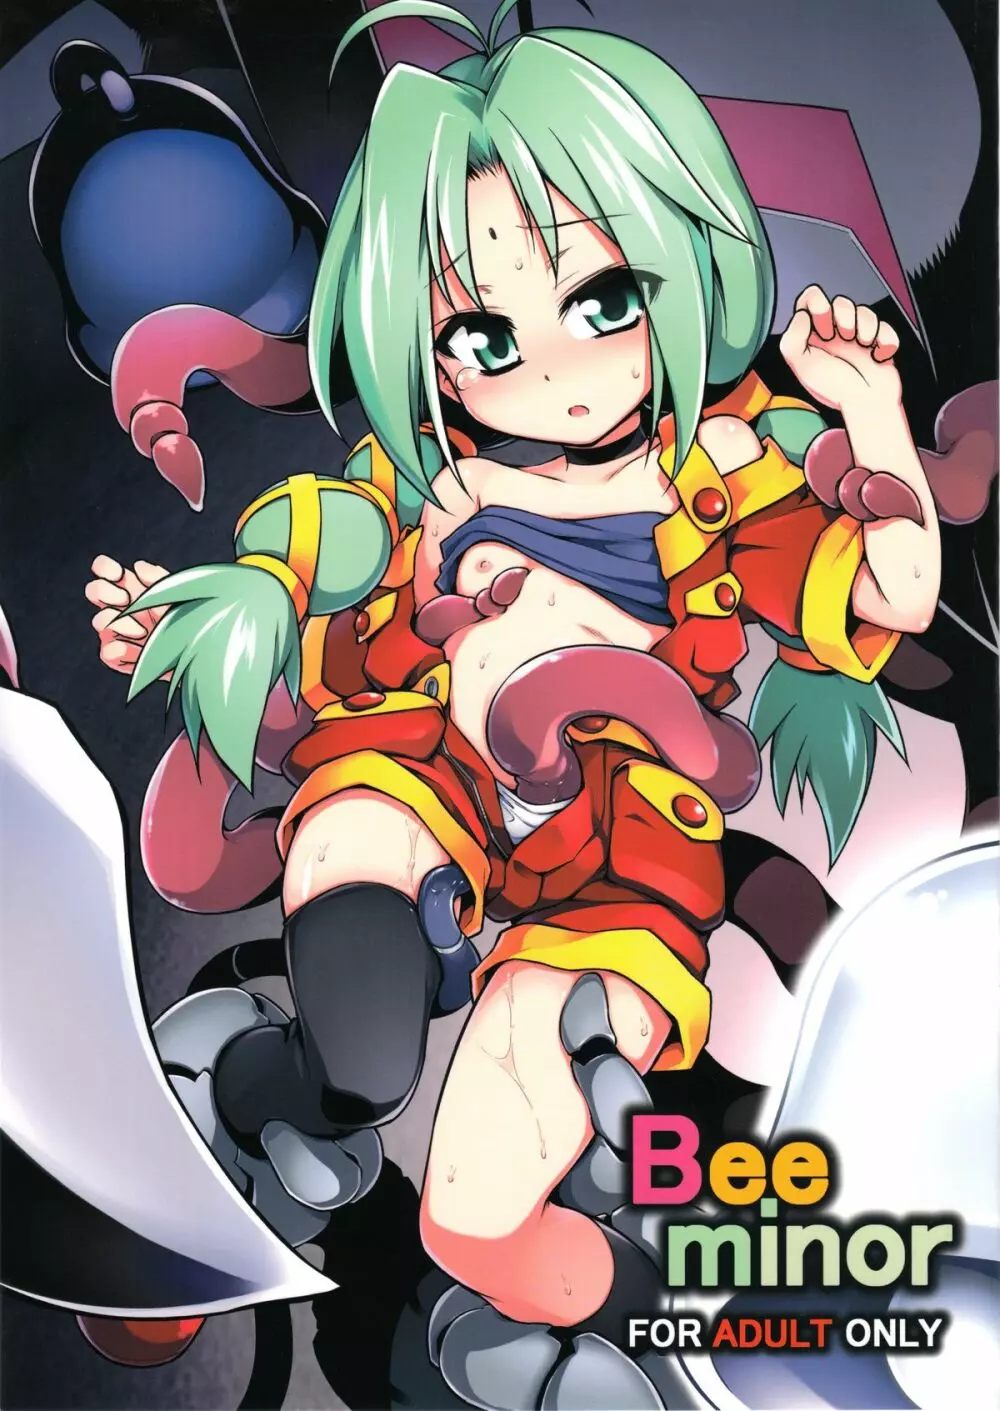 Bee minor